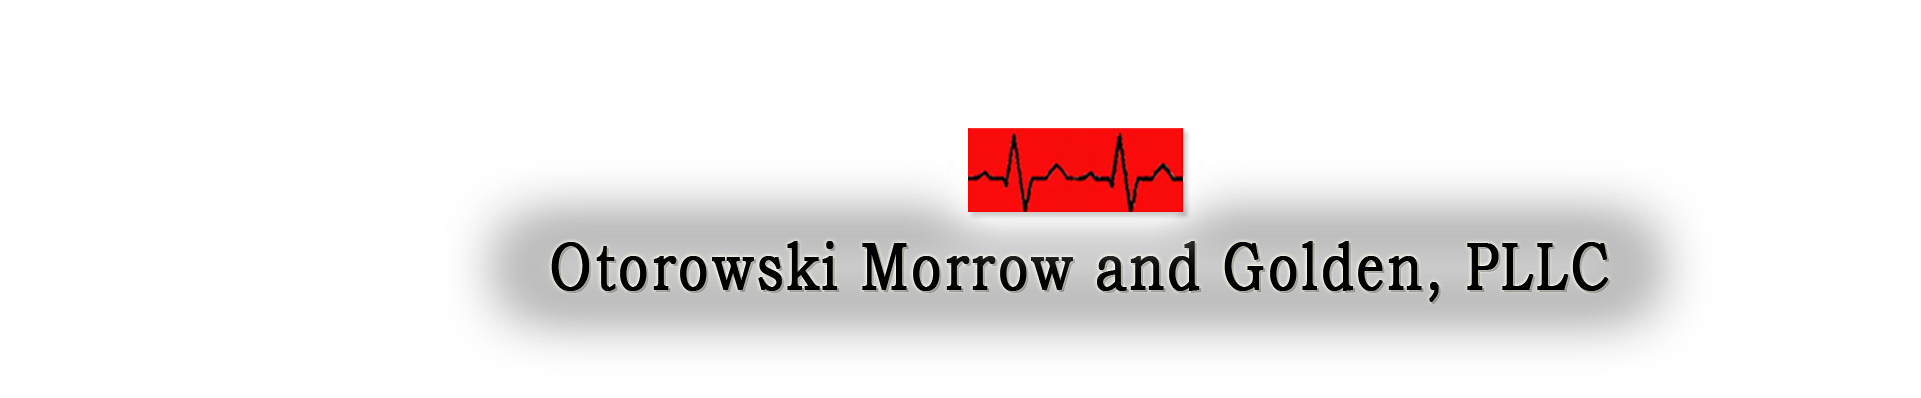 Otorowski, Morrow and Golden PLLC Logo